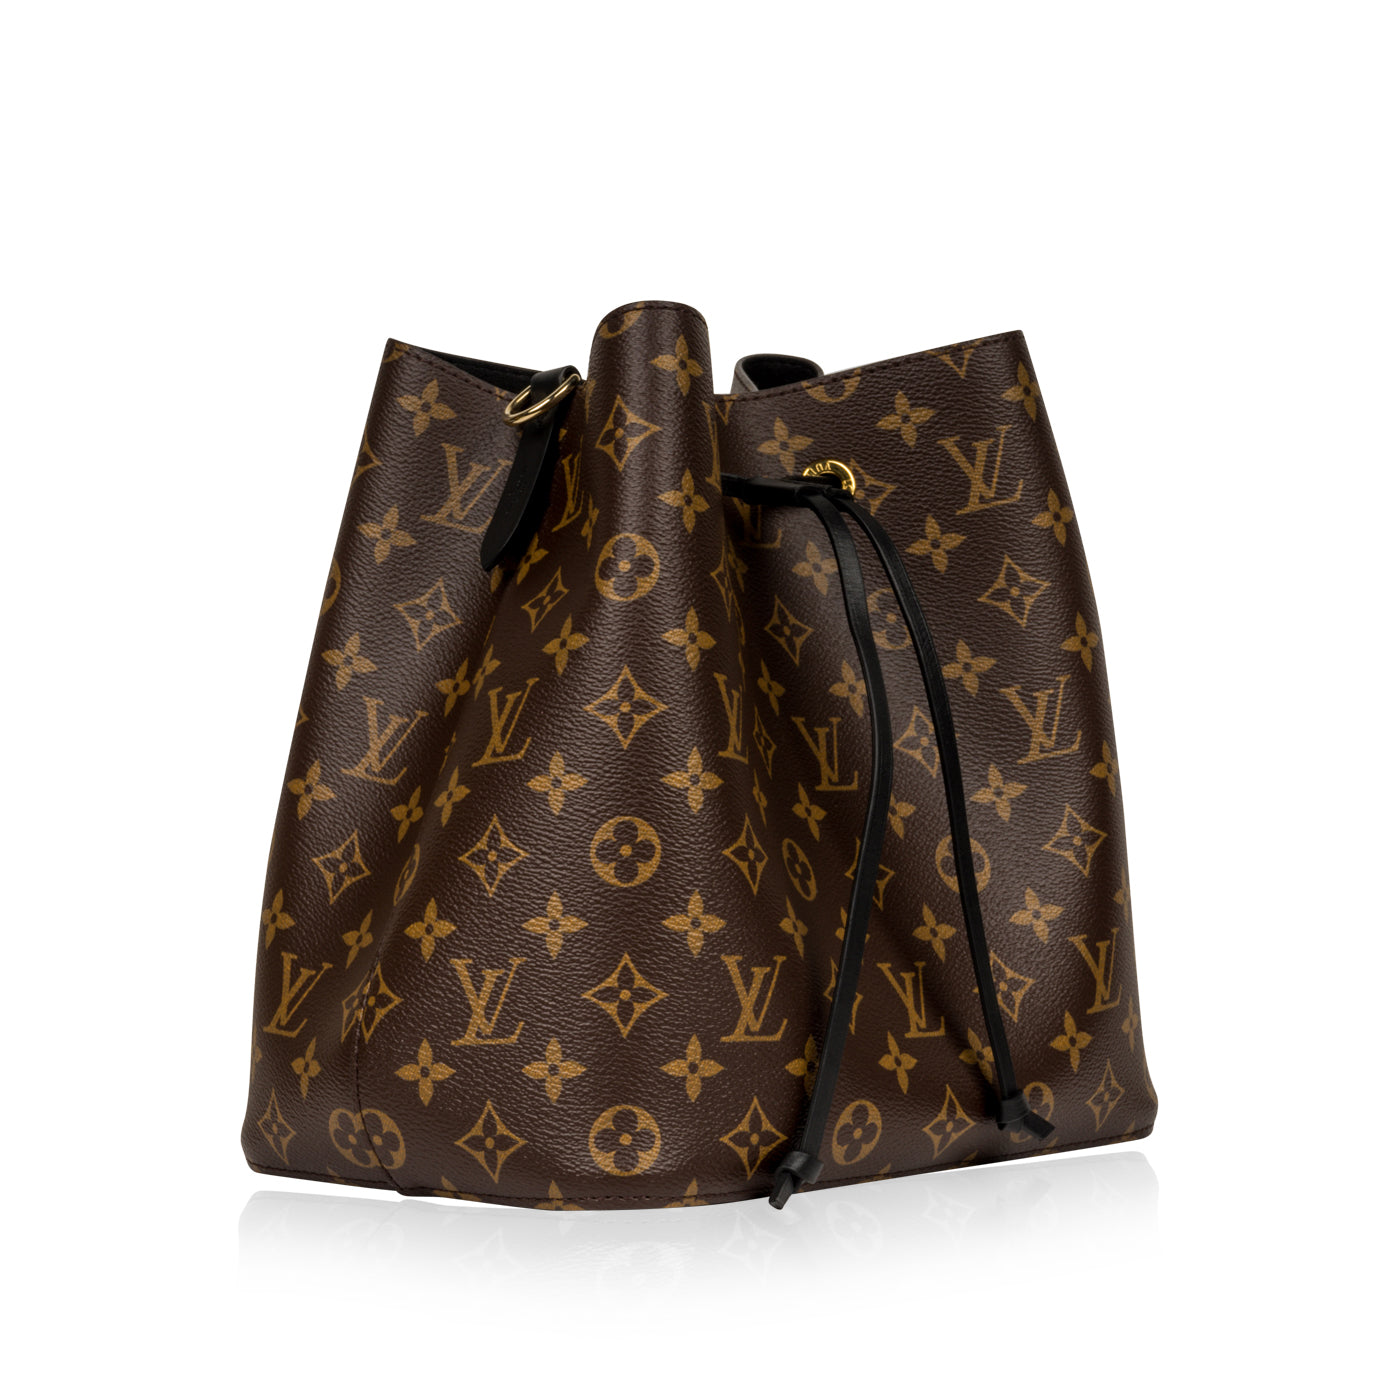 The Beautiful Neo Noe Club~  Louis vuitton bags prices, Black louis vuitton  bag, Chanel bag prices